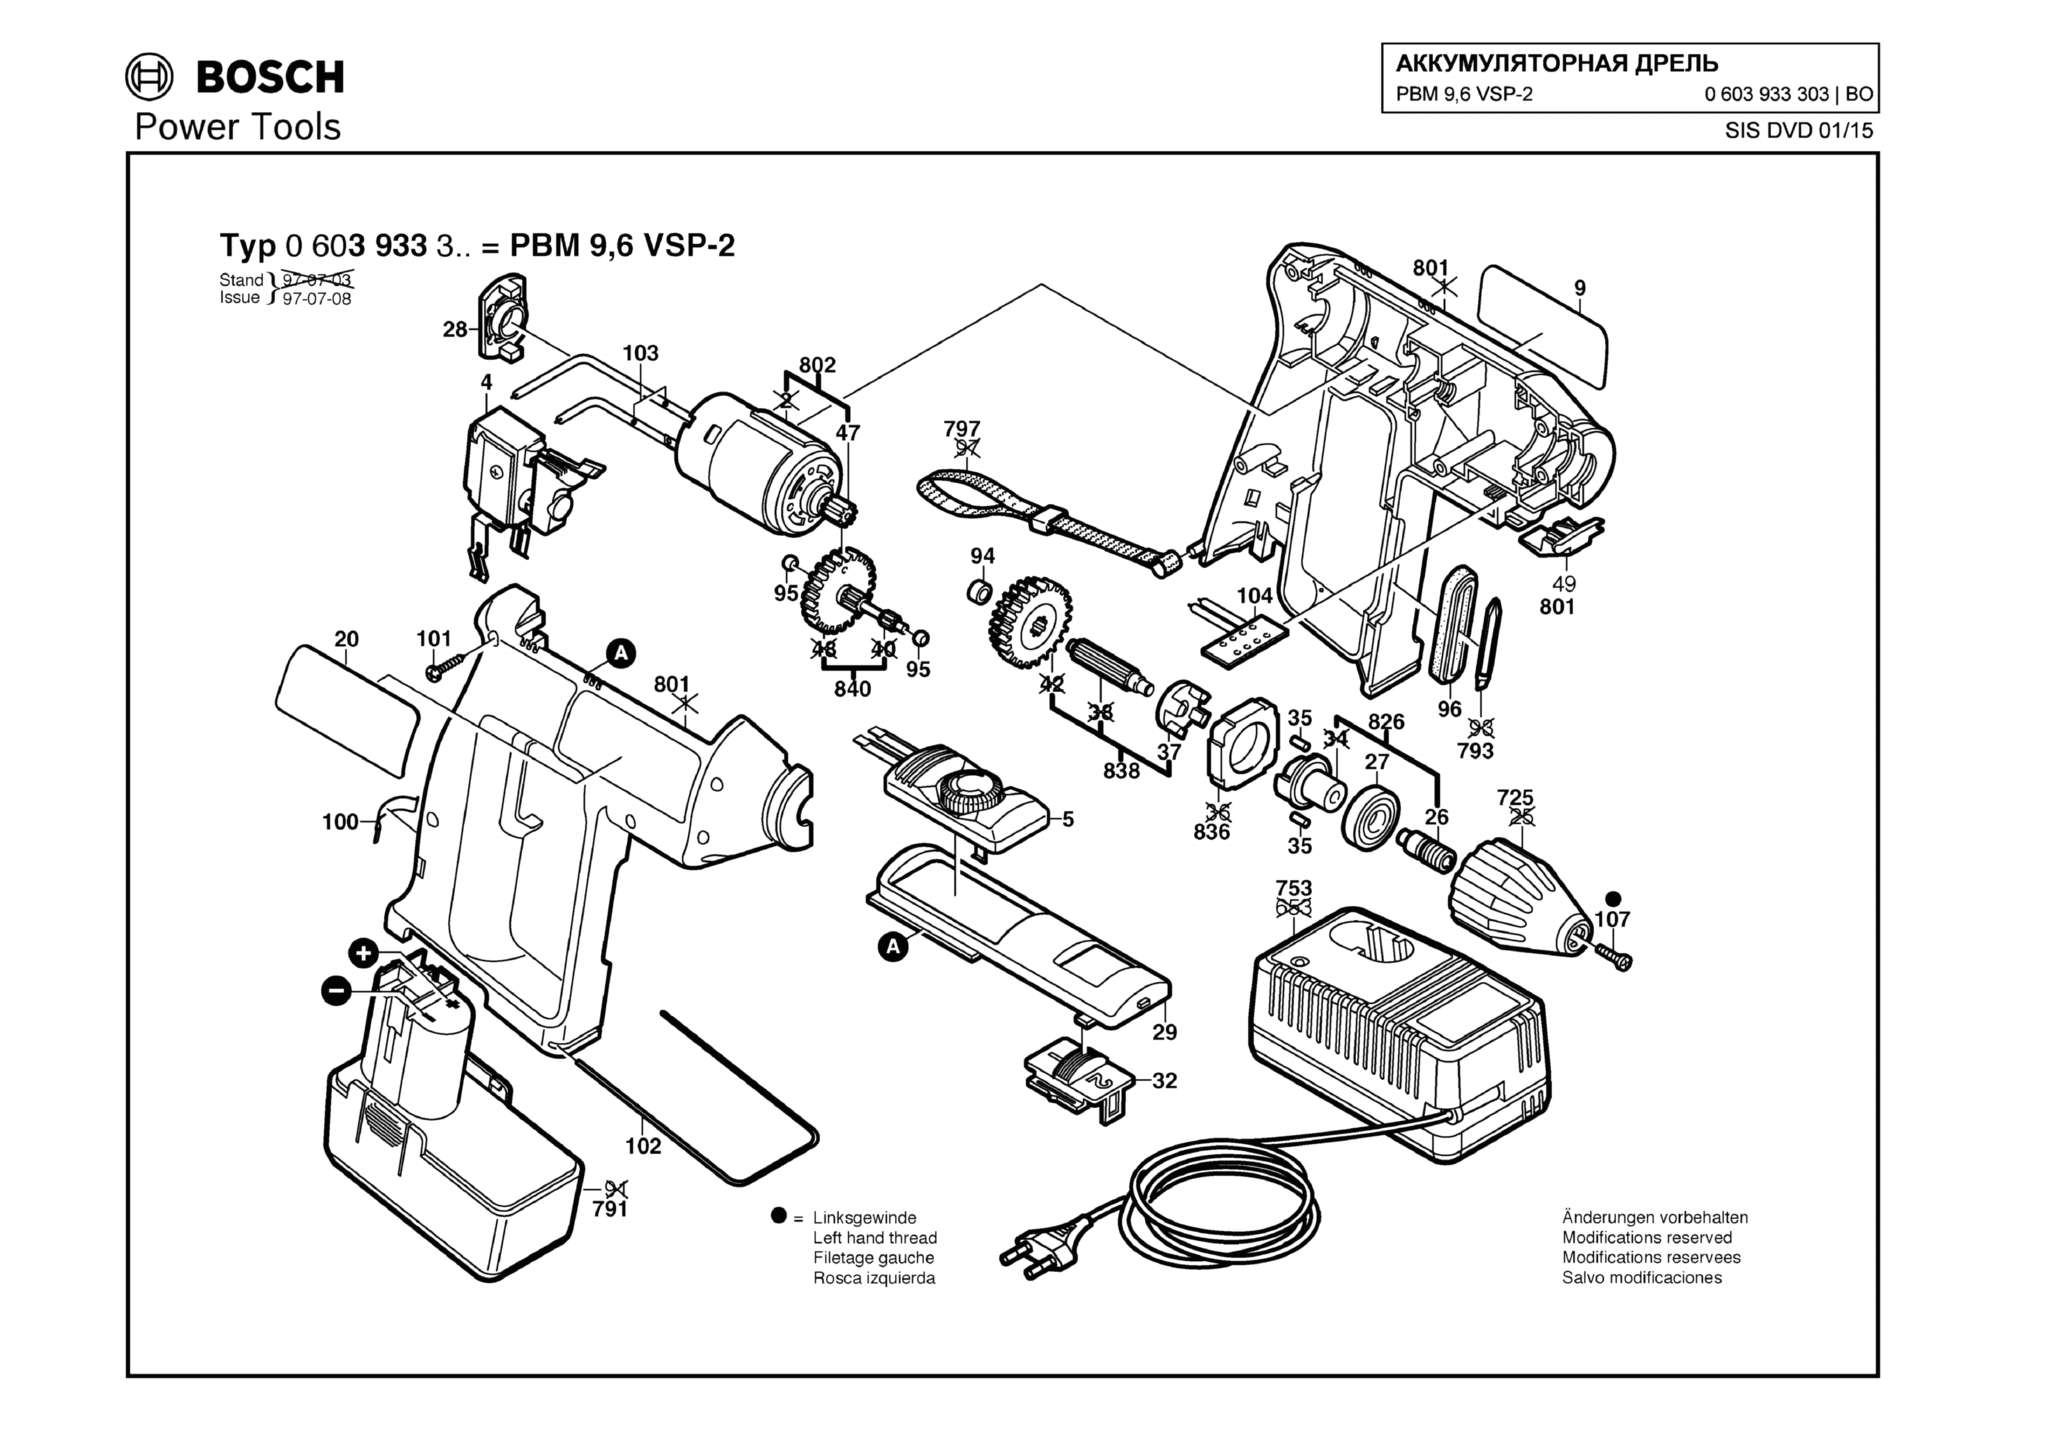 Запчасти, схема и деталировка Bosch PBM 9,6 VSP-2 (ТИП 0603933303)